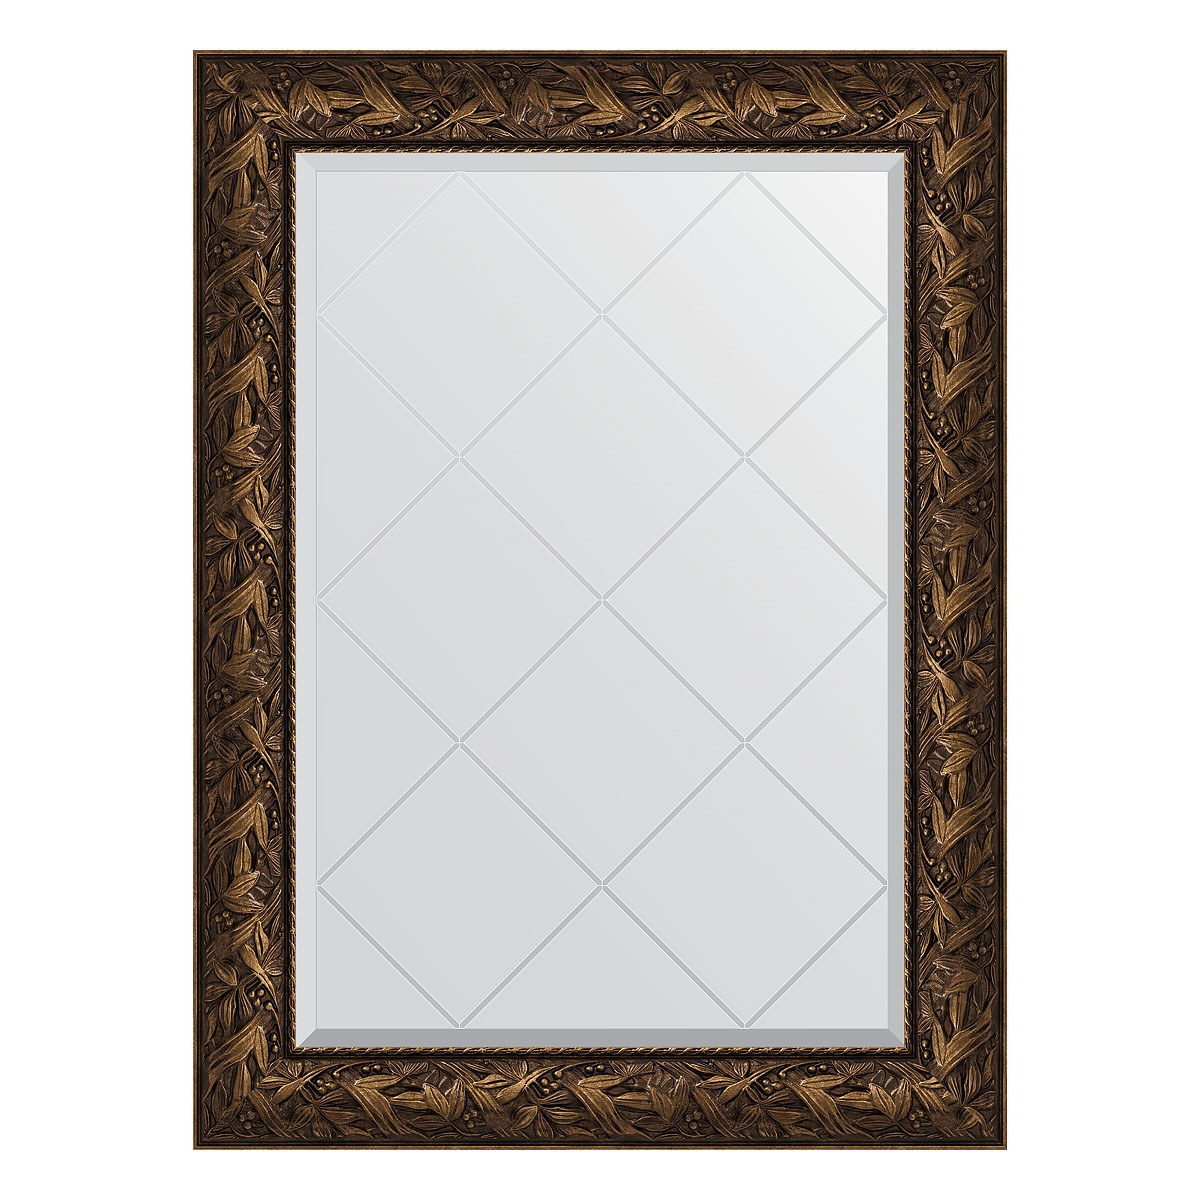 Зеркало с гравировкой в багетной раме Evoform византия бронза 99 мм 79x106 см зеркало с гравировкой в багетной раме византия бронза 99 мм 79x106 см